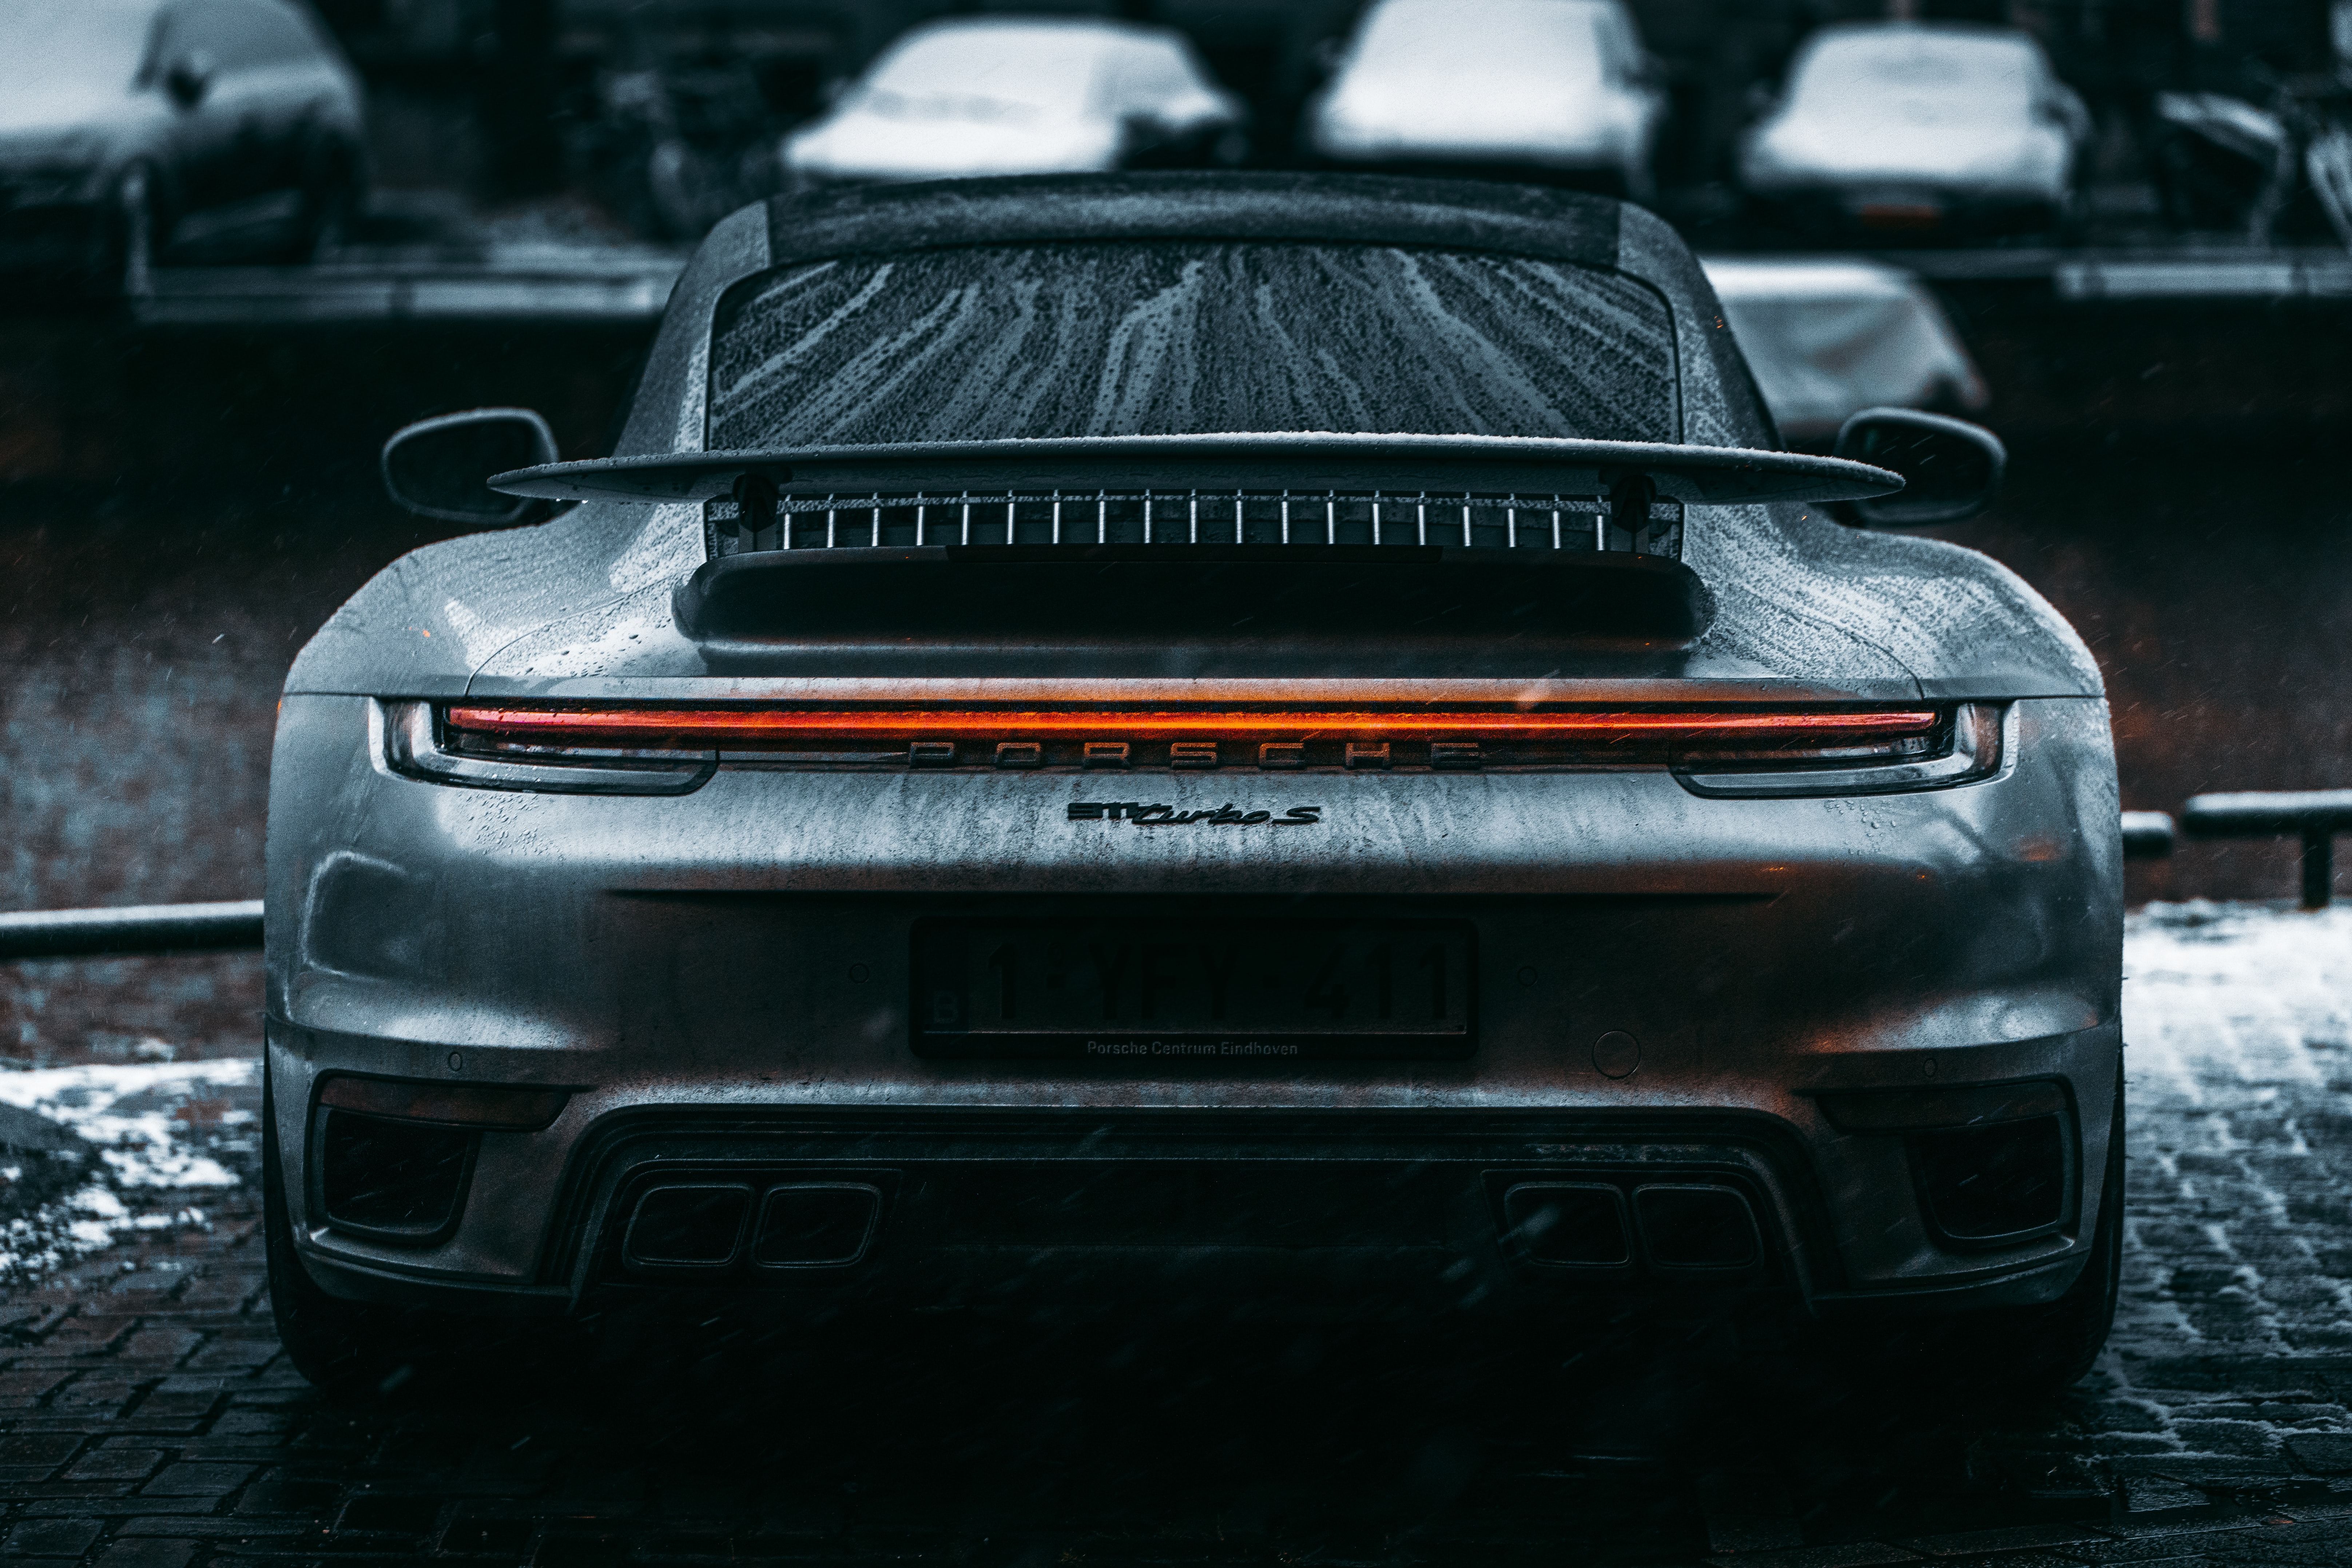 Dành cho những ai yêu thích siêu xe Porsche và muốn tìm kiếm bộ ảnh nền đẹp nhẹ nhàng, cùng ngắm bộ hình nền siêu xe Porsche đẹp này. Chi tiết về chiếc xe được thể hiện sắc nét, bắt mắt, vô cùng chân thực và sống động.